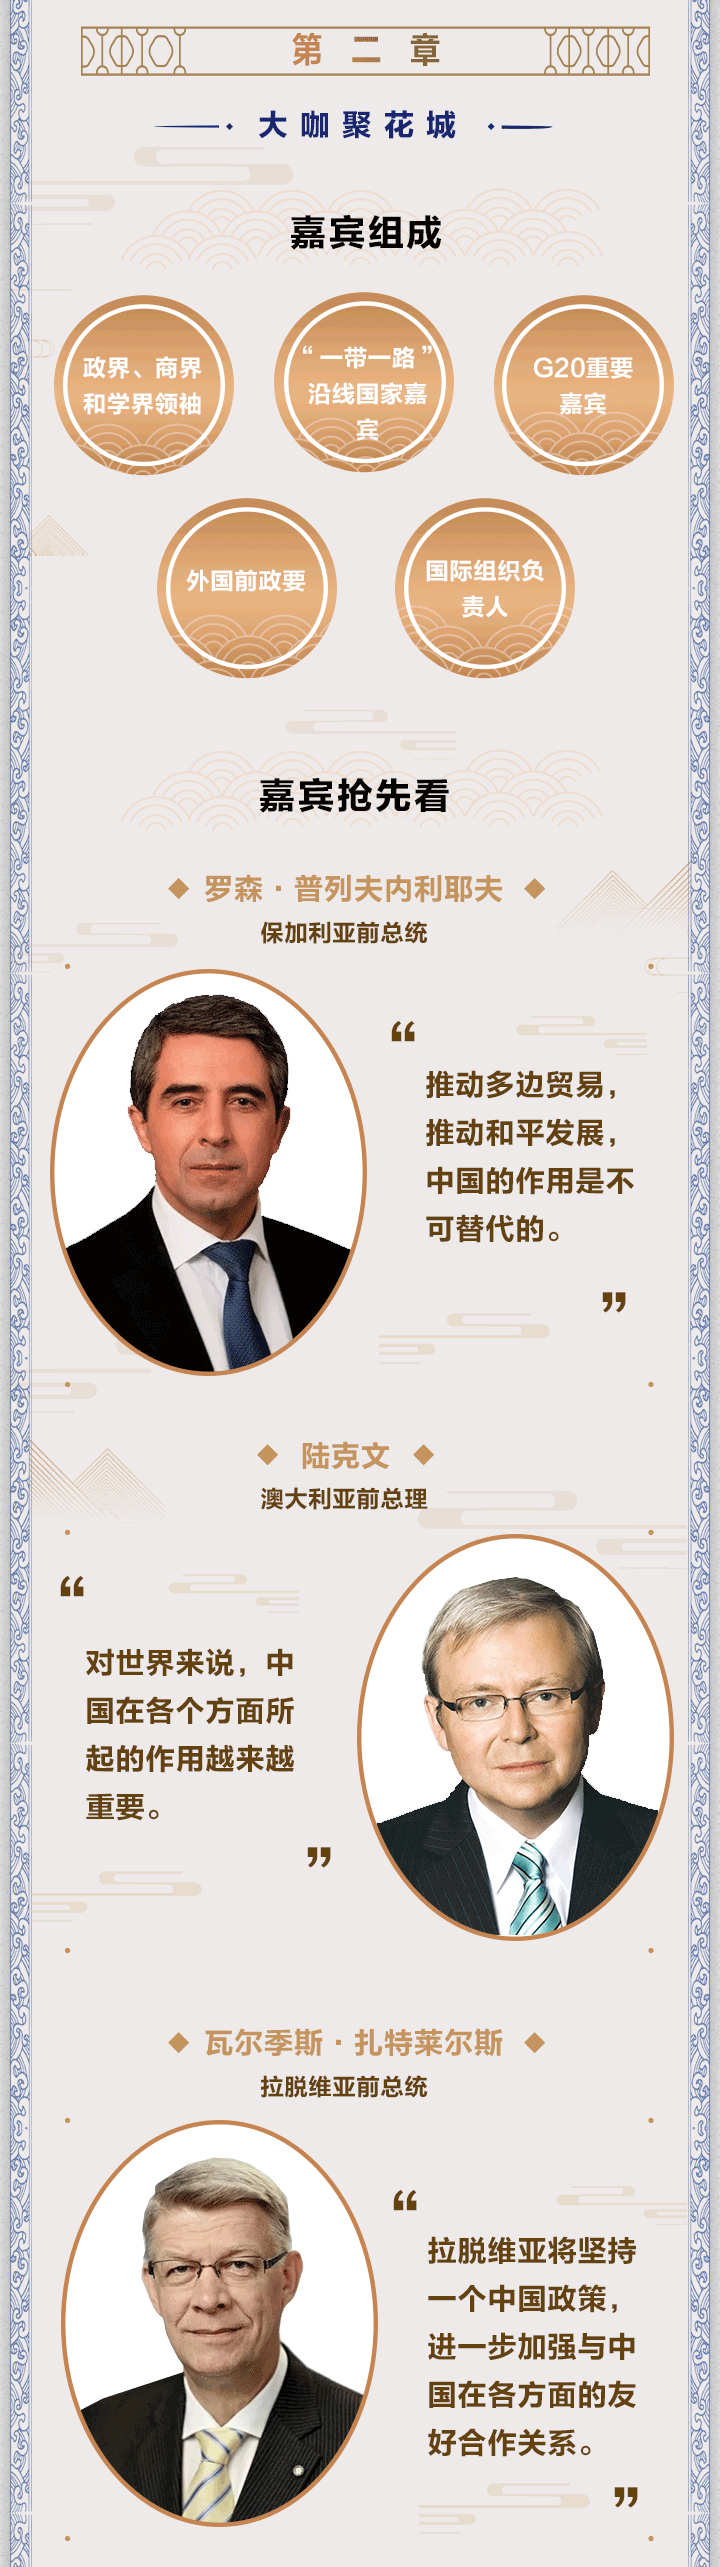 “图说 “读懂中国”广州国际会议